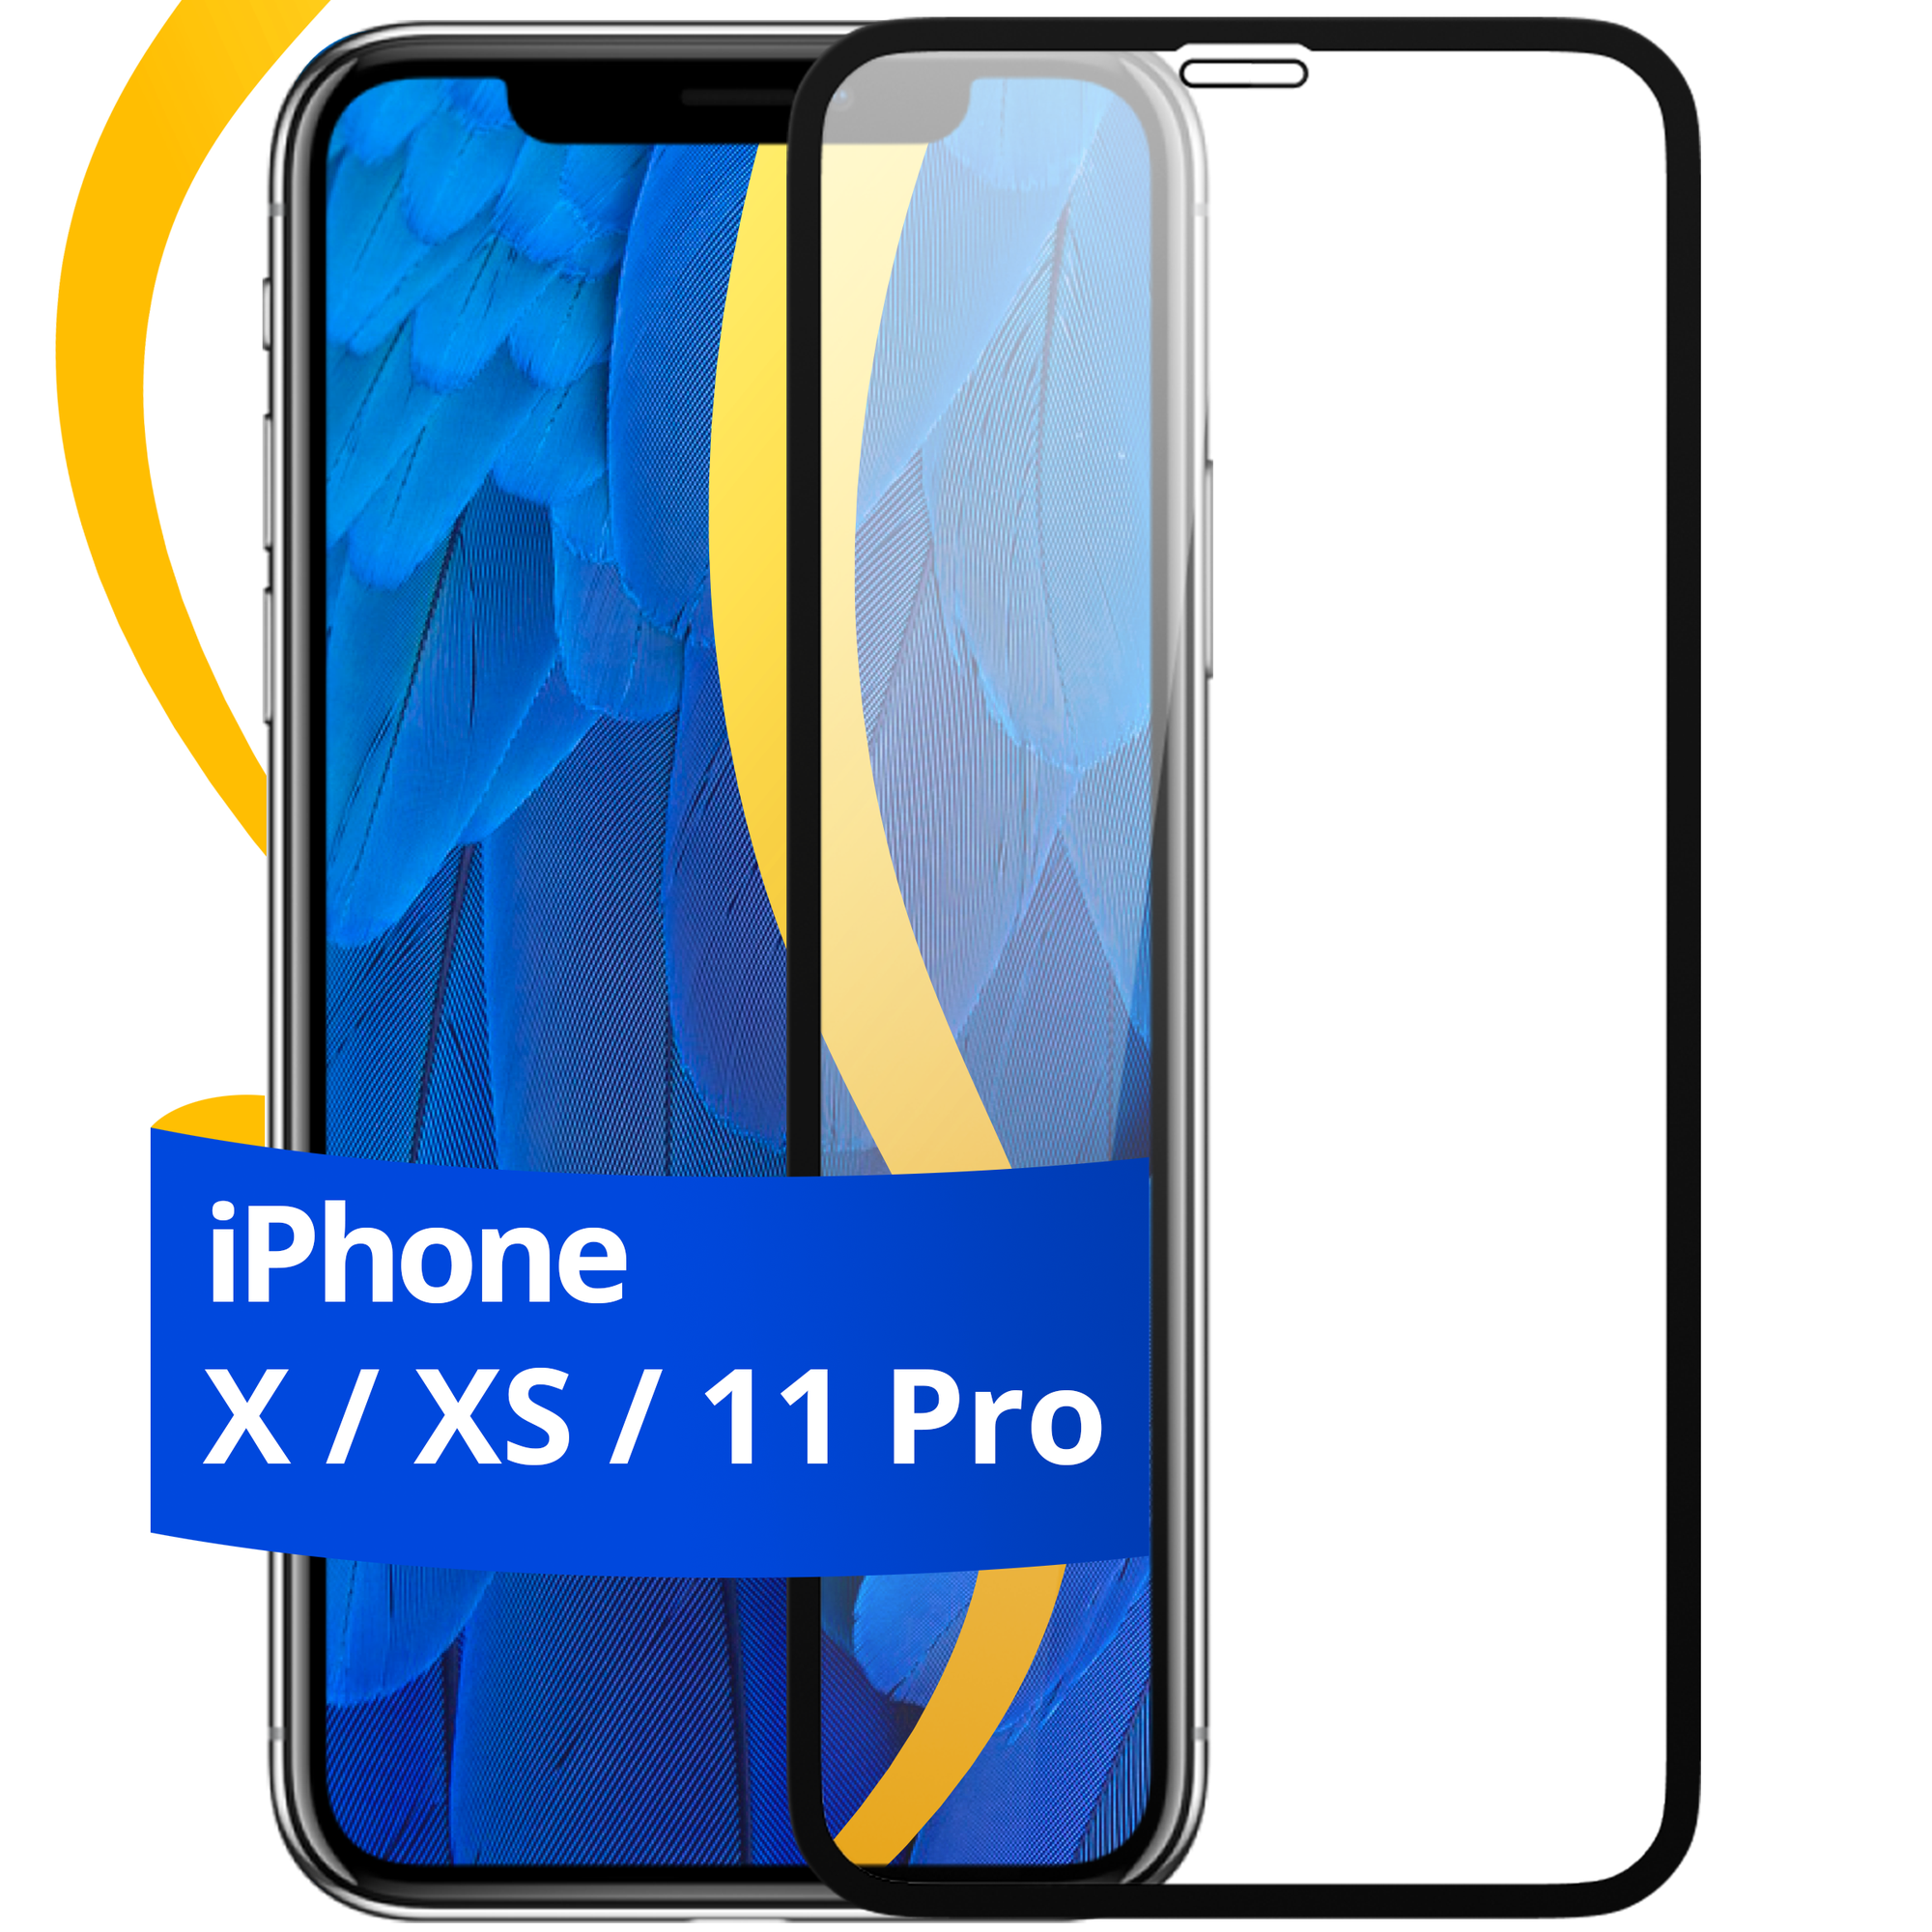 Глянцевое защитное стекло для Apple iPhone X, XS и 11 Pro / Противоударное стекло с олеофобным покрытием на смартфон Эпл Айфон Х, ХС и 11 Про